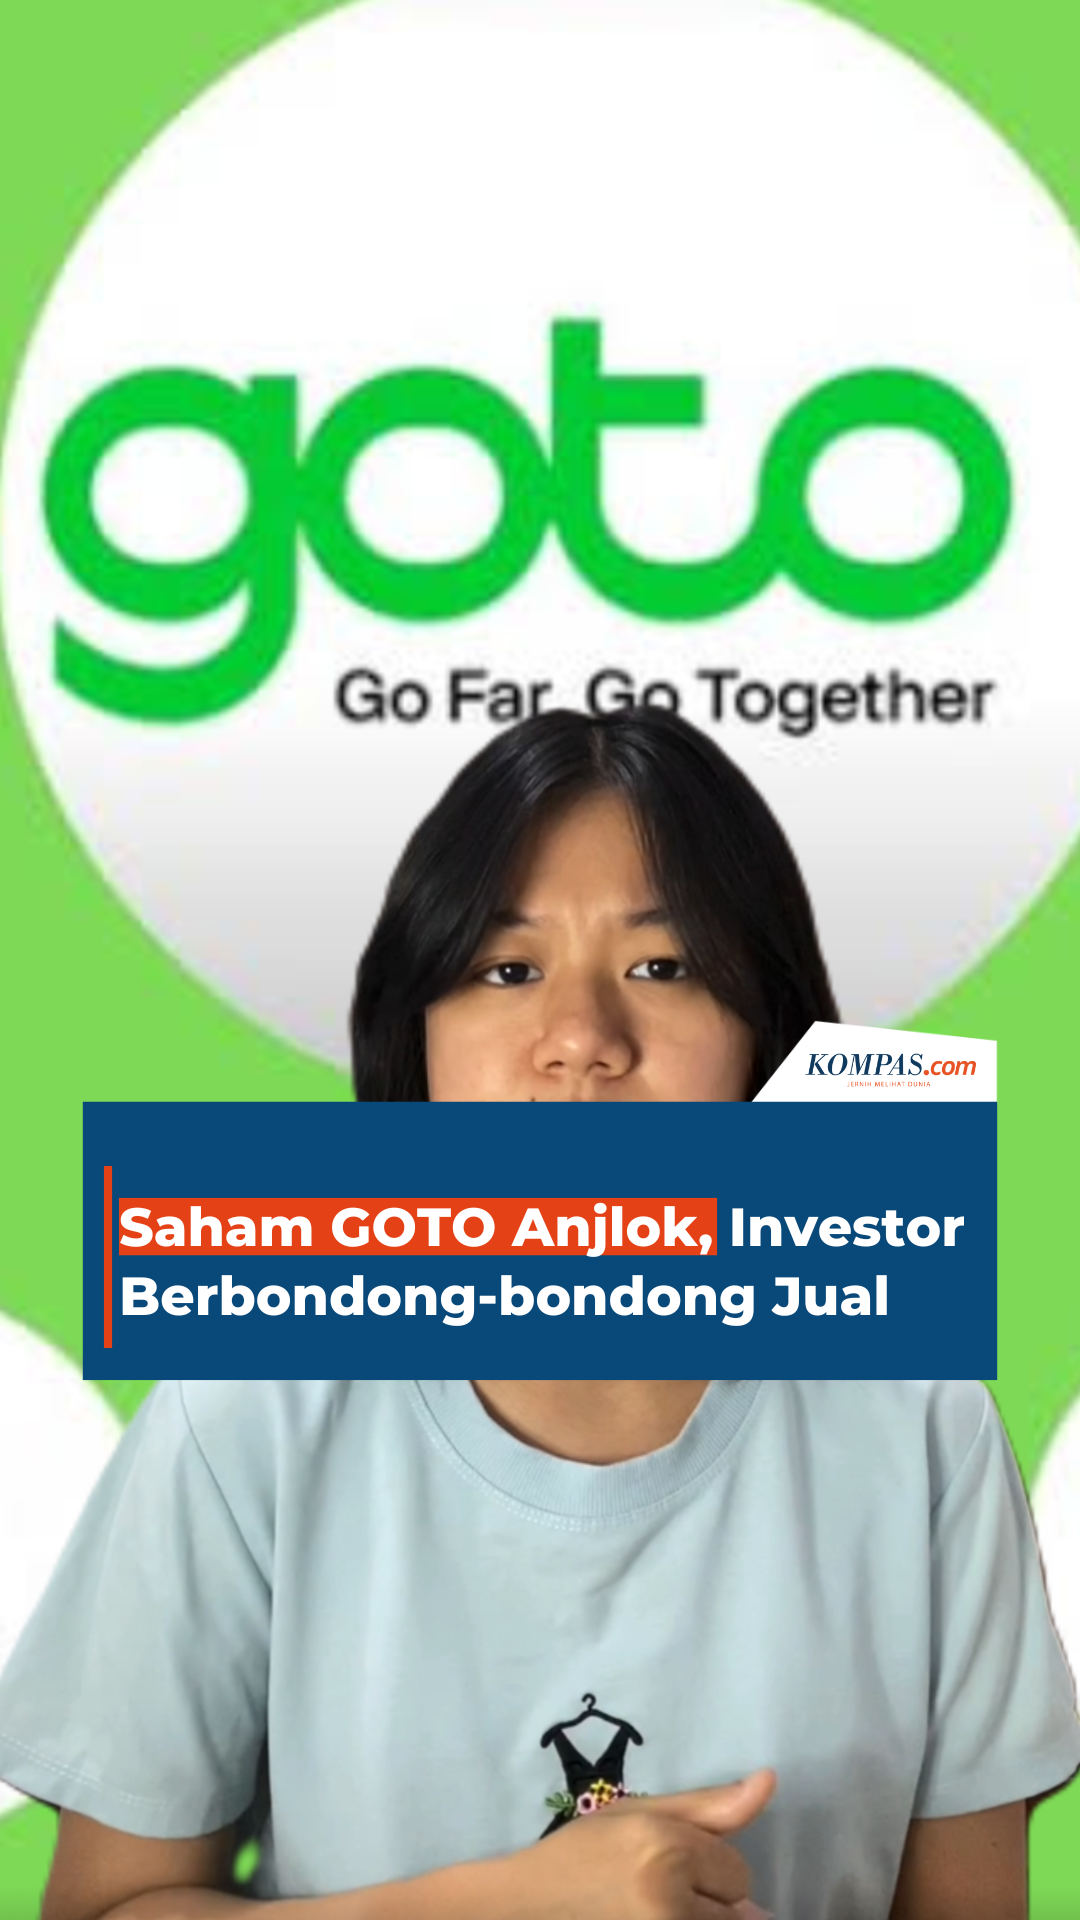 Saham GOTO Anjlok, Investor Berbondong-bondong Jual